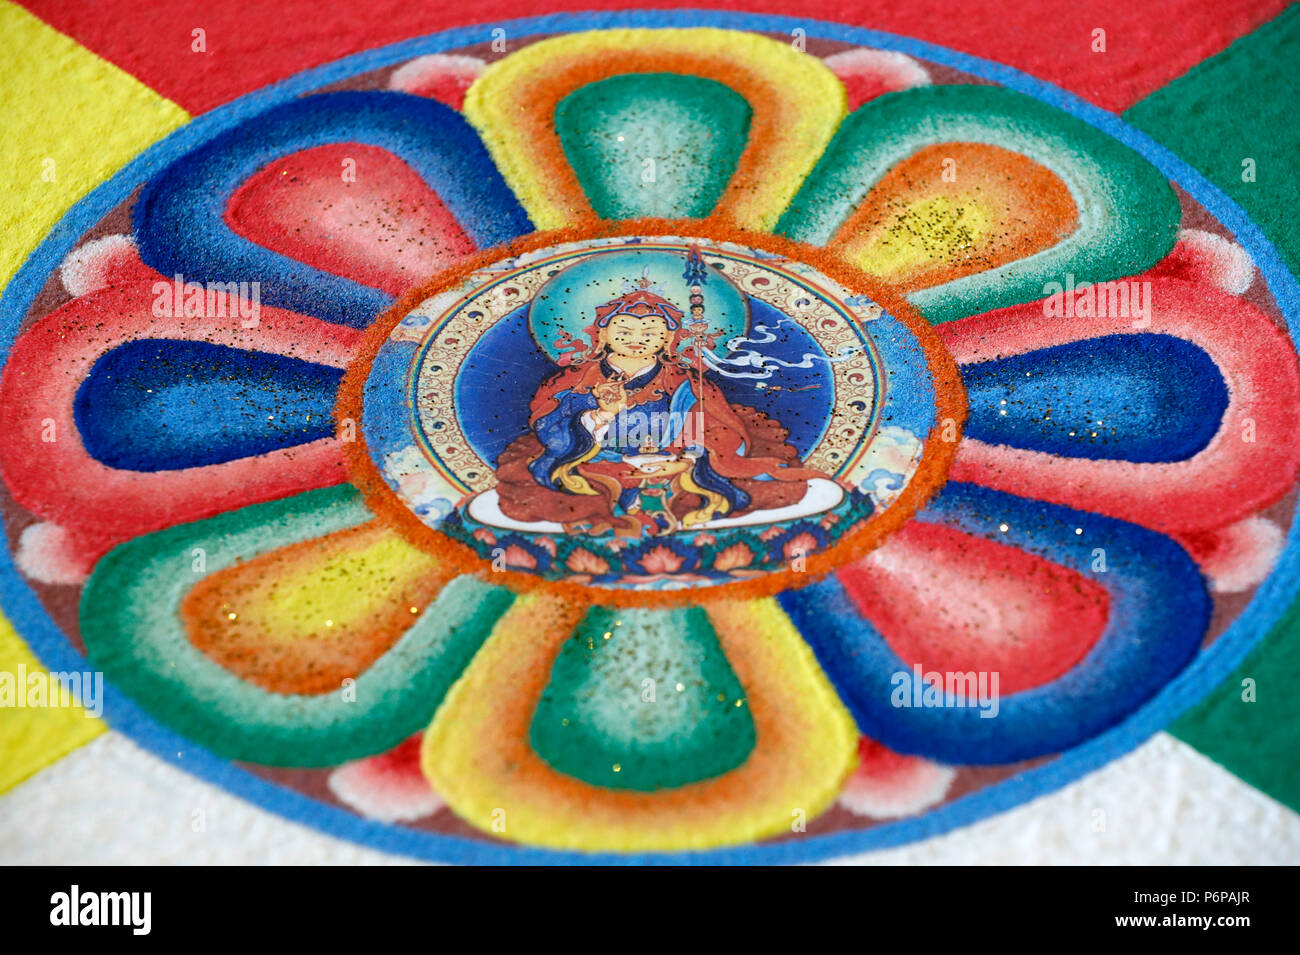 Tibetisch-buddhistischen Sand Mandala. Padmasambhava auch als Guru Rinpoche bekannt. Stockfoto